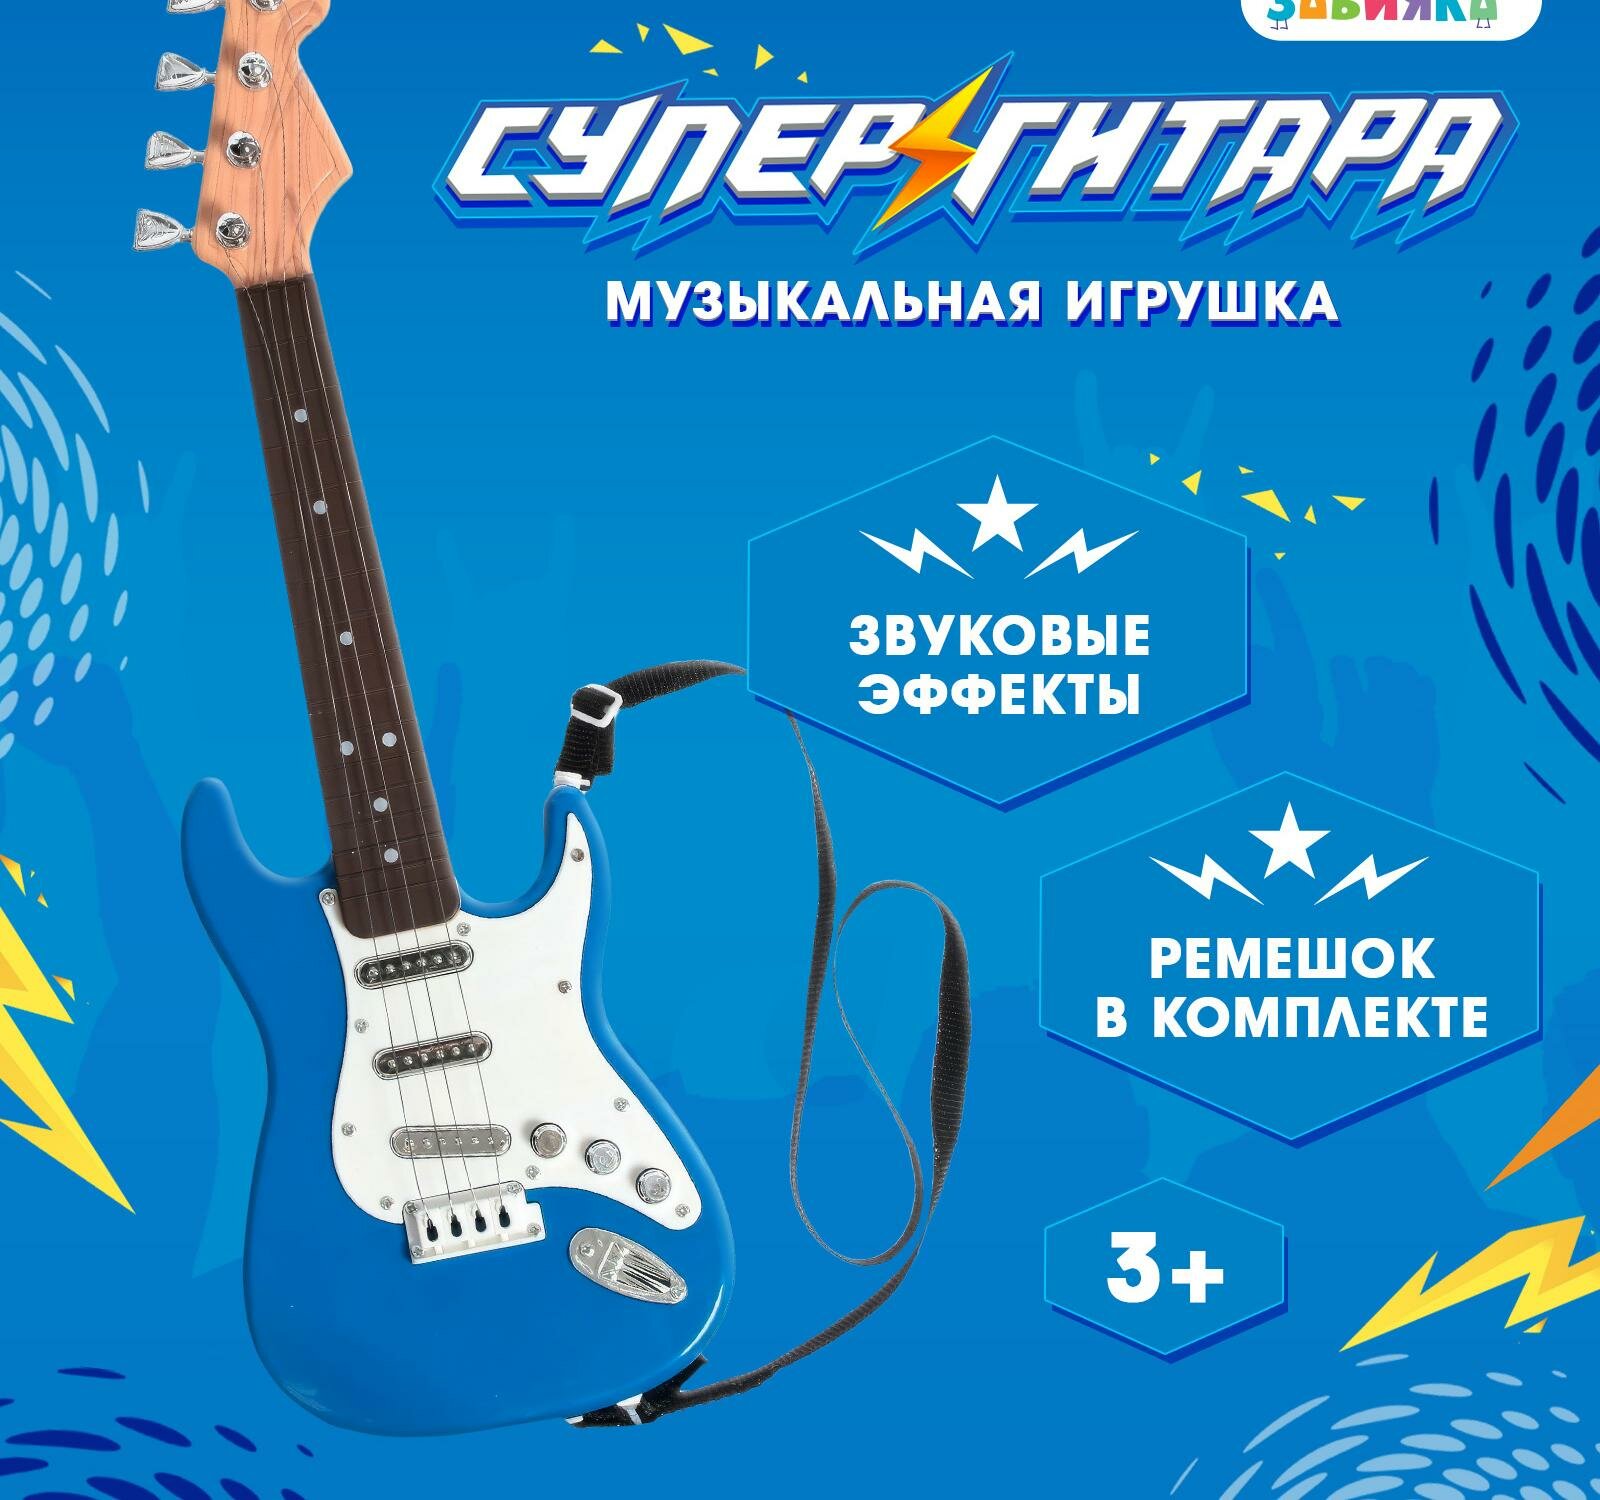 Игрушка музыкальная "Гитара рокер", звуковые эффекты, цвет синий